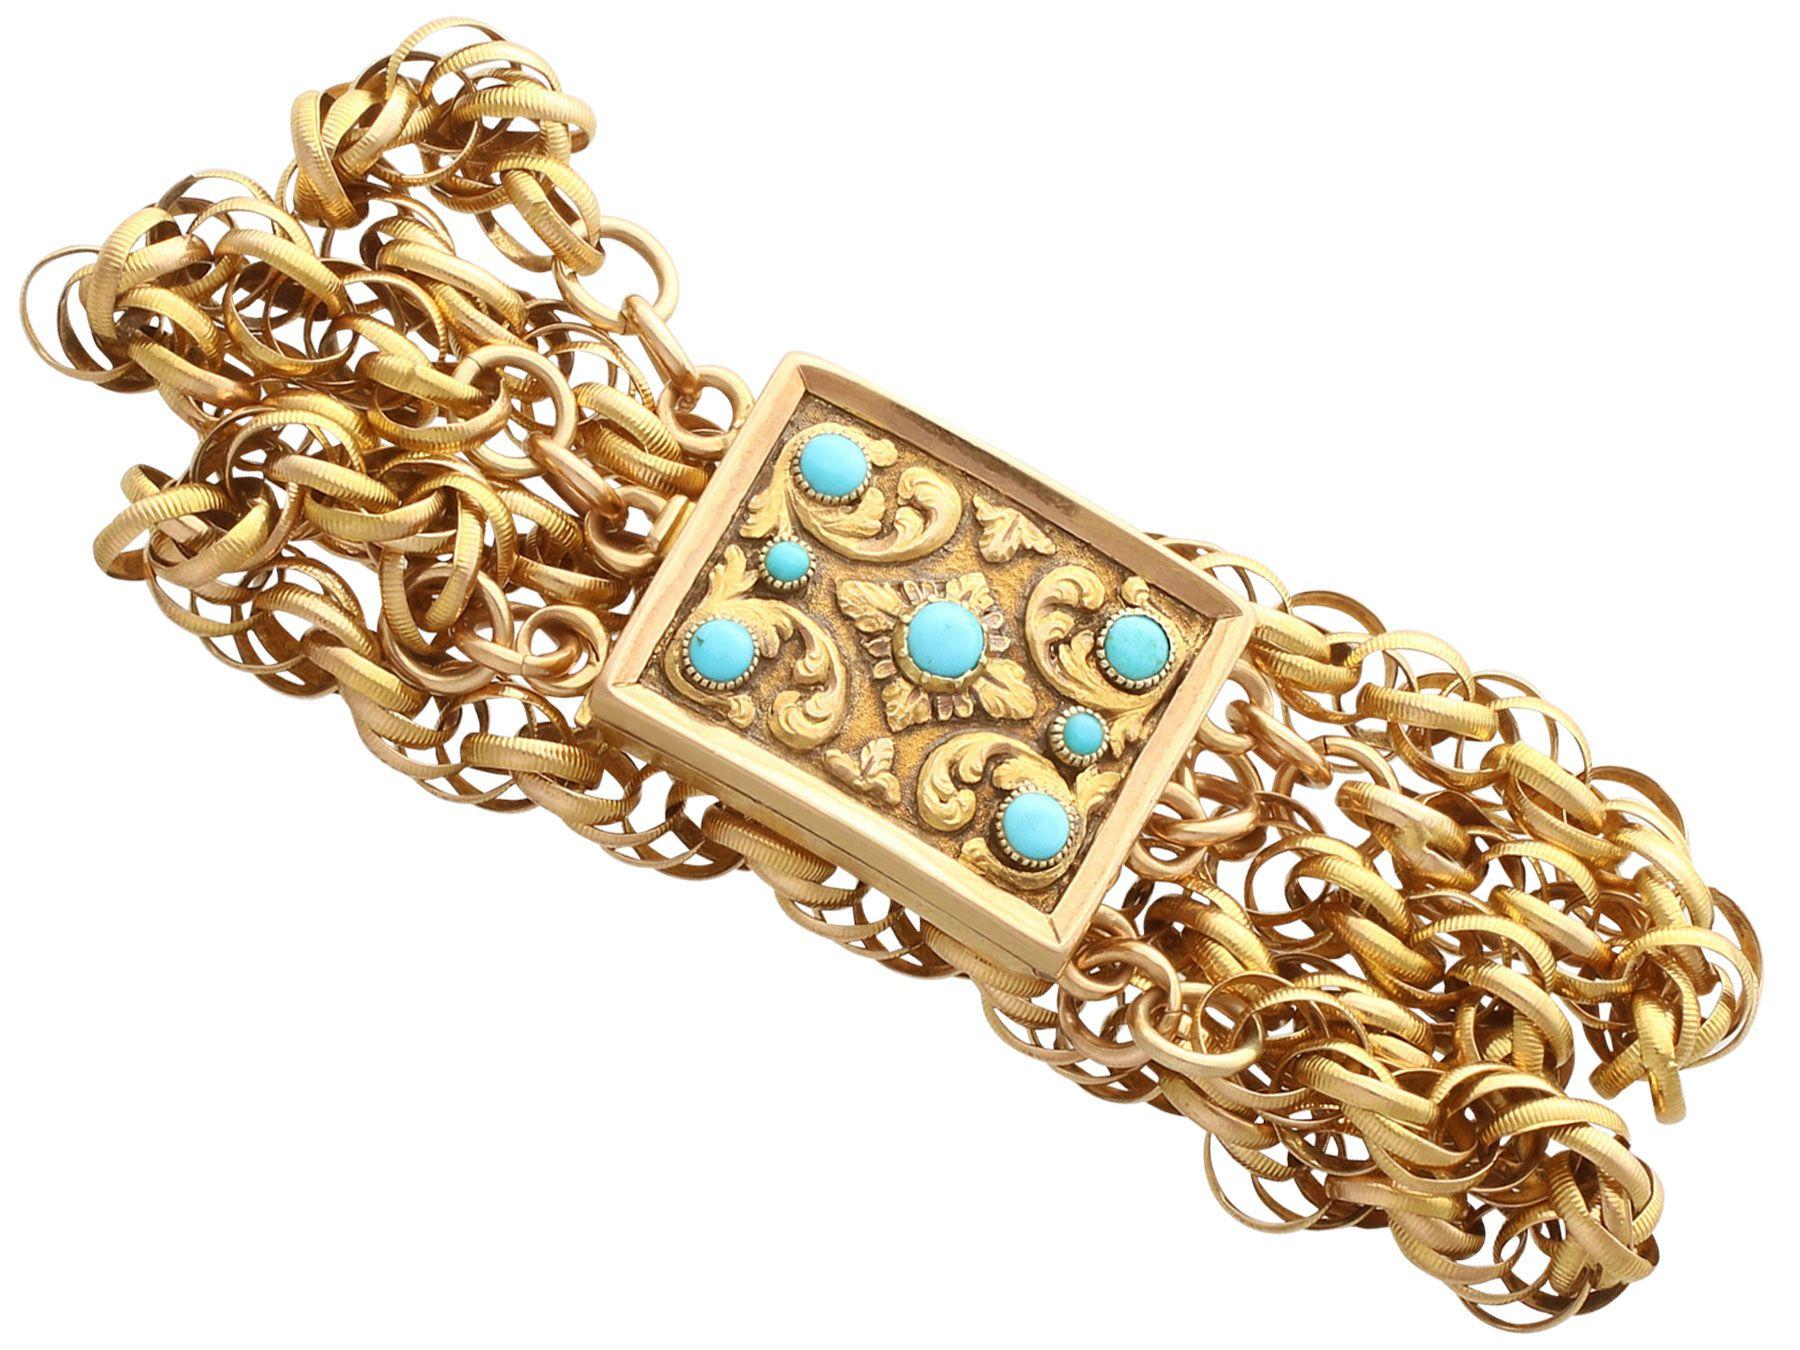 Eine atemberaubende antike George IV Türkis und 18 Karat Gelbgold Armband mit einem trauernden Medaillon Verschluss; Teil unserer vielfältigen antiken Schmuck und Estate Jewelry Sammlungen.

Dieses atemberaubende, feine und beeindruckende